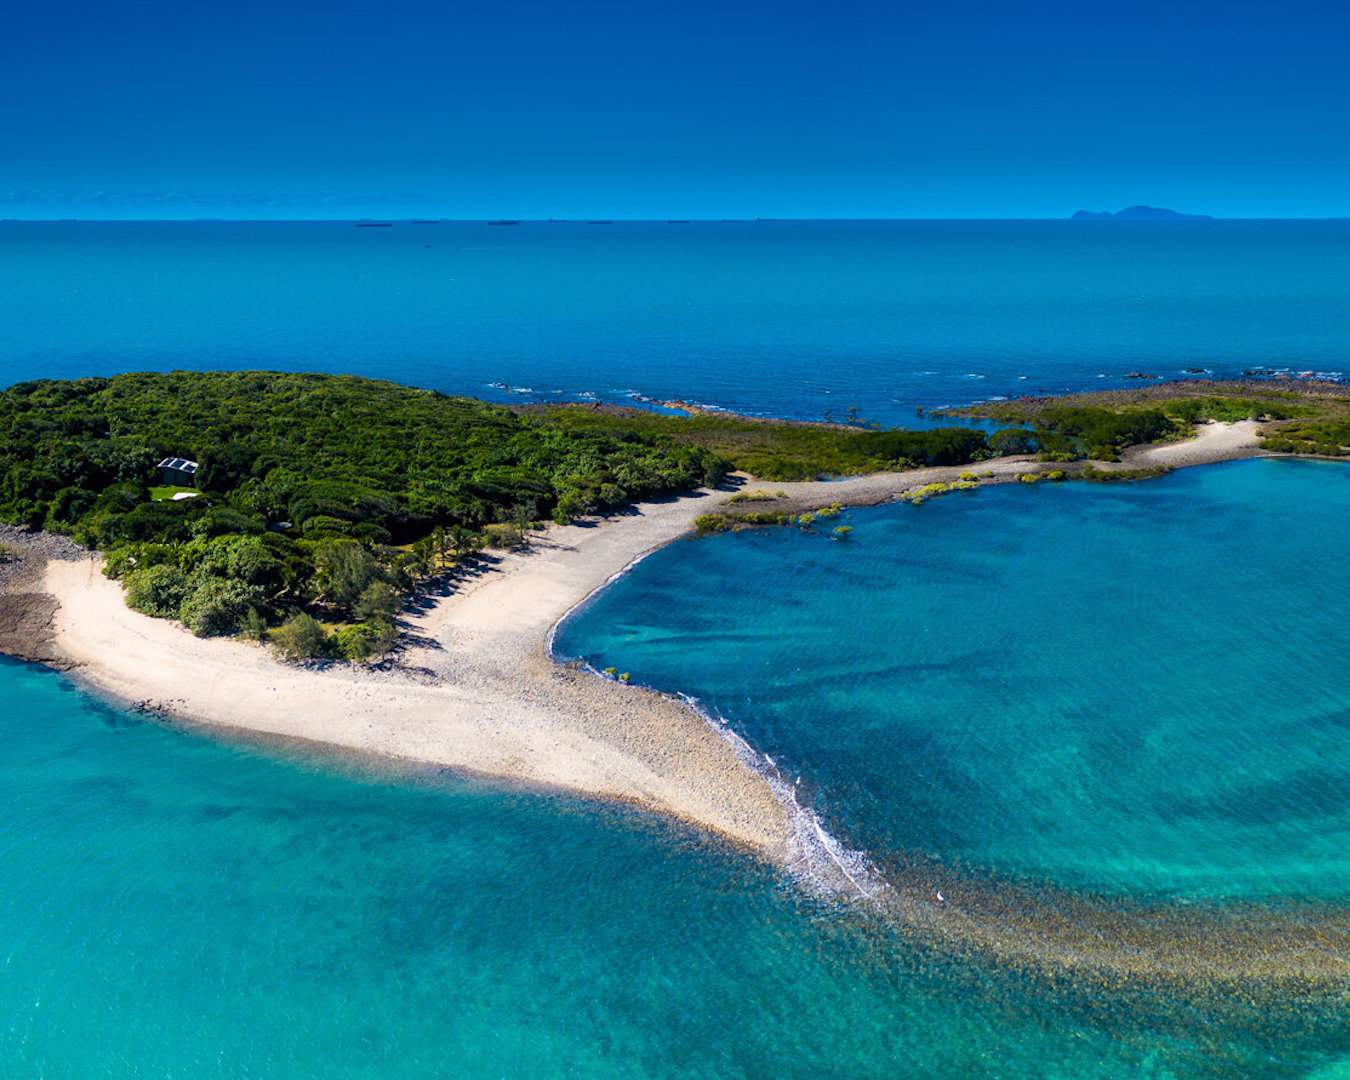 Victor Island dans les Whitsundays.  Une petite île luxuriante entourée d'eau bleue claire.